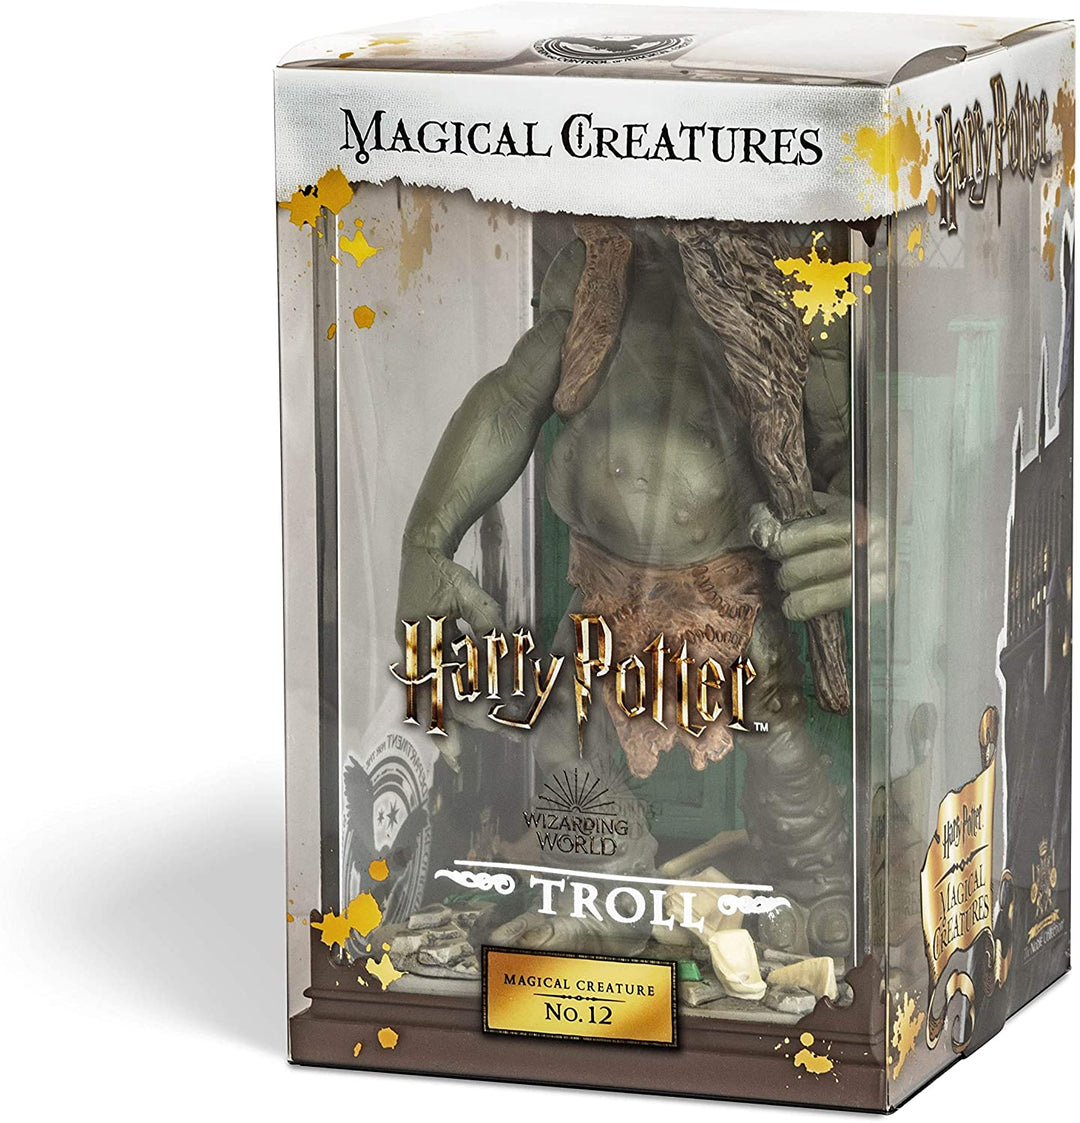 The Noble Collection – Magische Kreaturen Troll – handbemalte magische Kreatur Nr. 12 – offiziell lizenzierte 7 Zoll (18,5 cm) Harry Potter Toys Sammelfiguren – für Kinder und Erwachsene